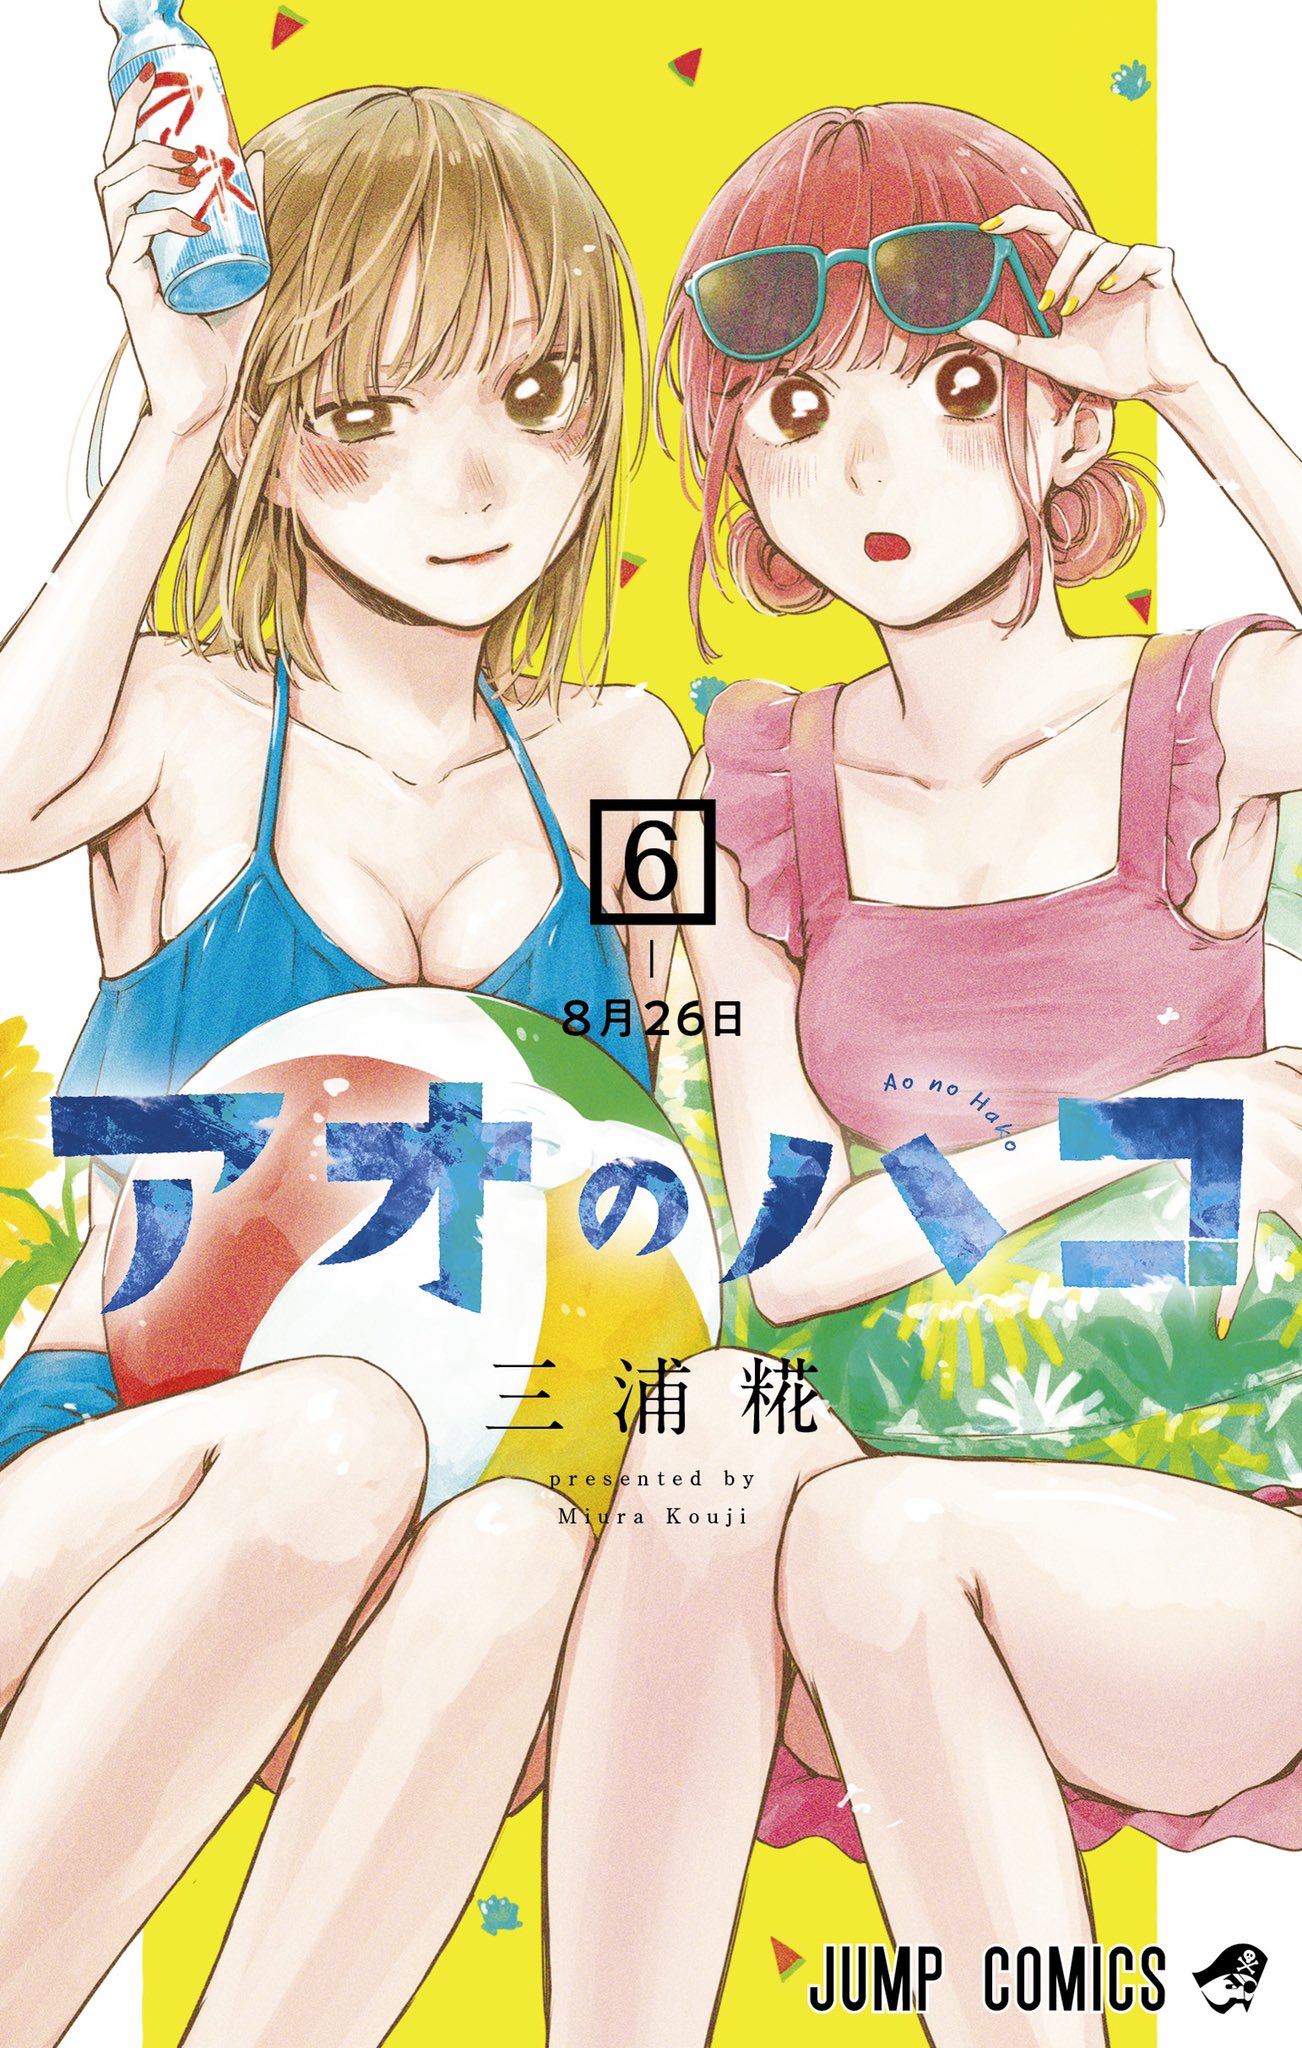 Blue Box Chương 116 Ngày phát hành, thời gian và đọc ở đâu? - All Things  Anime